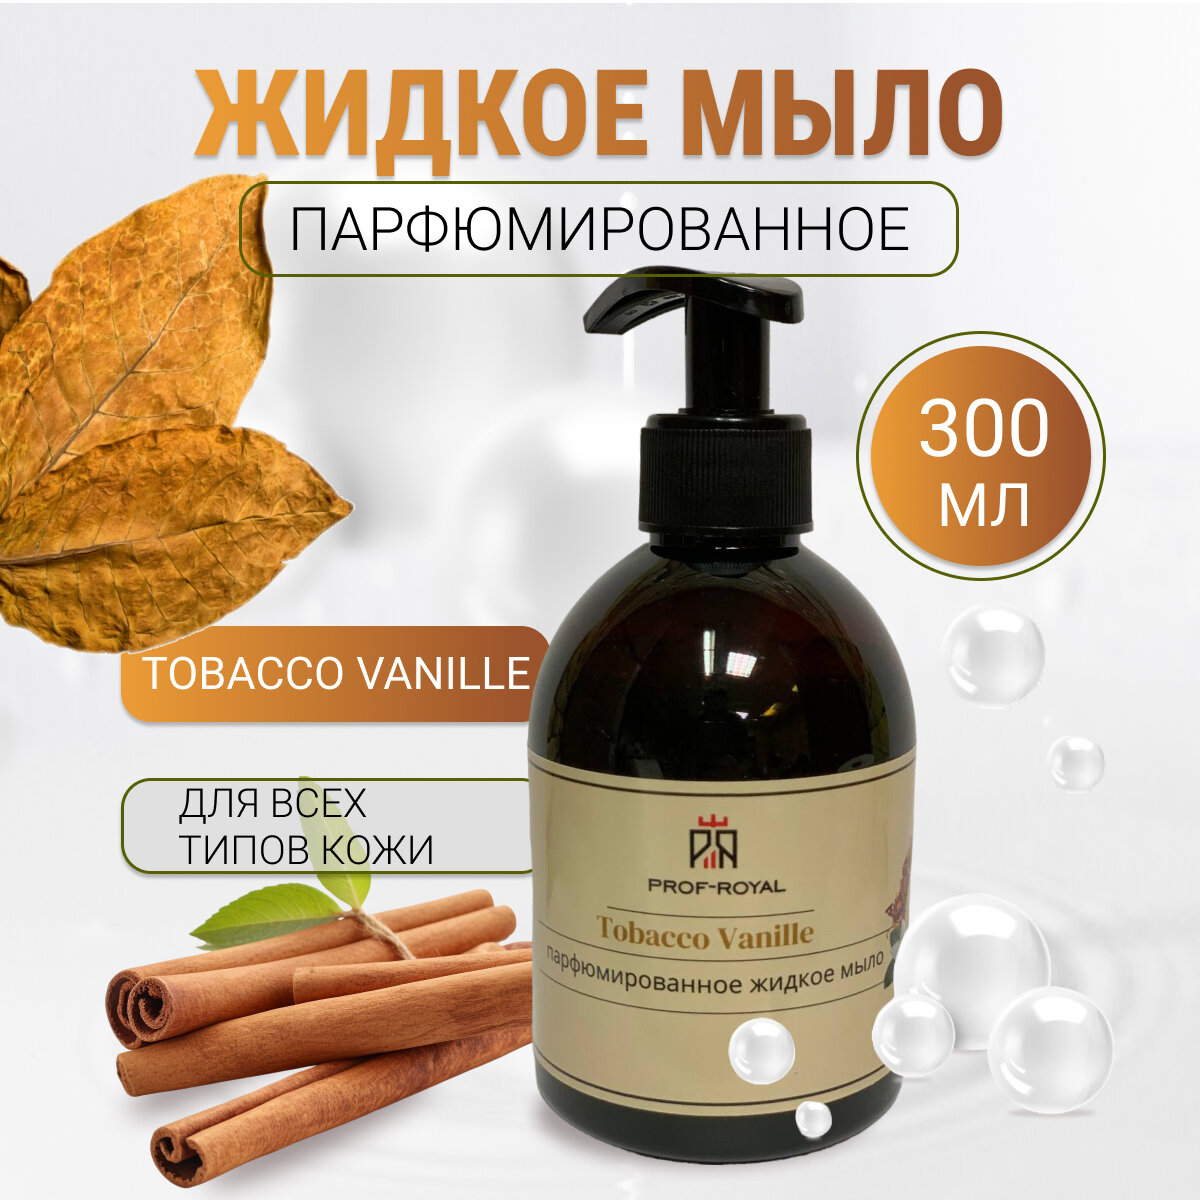 Prof-Royal Жидкое мыло Tobacco Vanille для рук парфюмированное с ароматом Ванили и табака, 300 мл